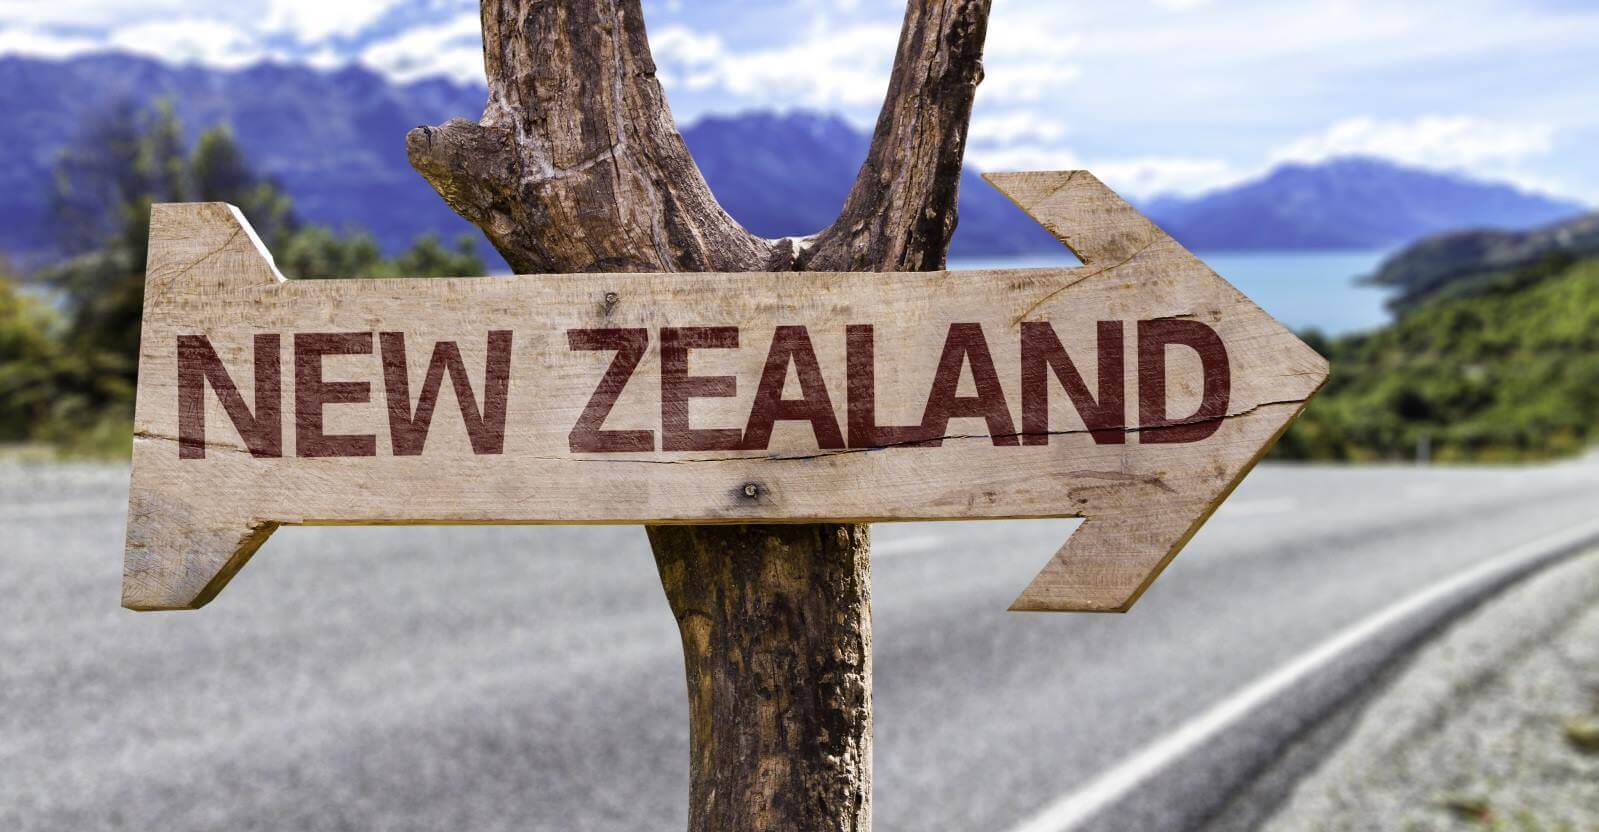 Định cư New Zealand diện tay nghề tại những thành phố lớn